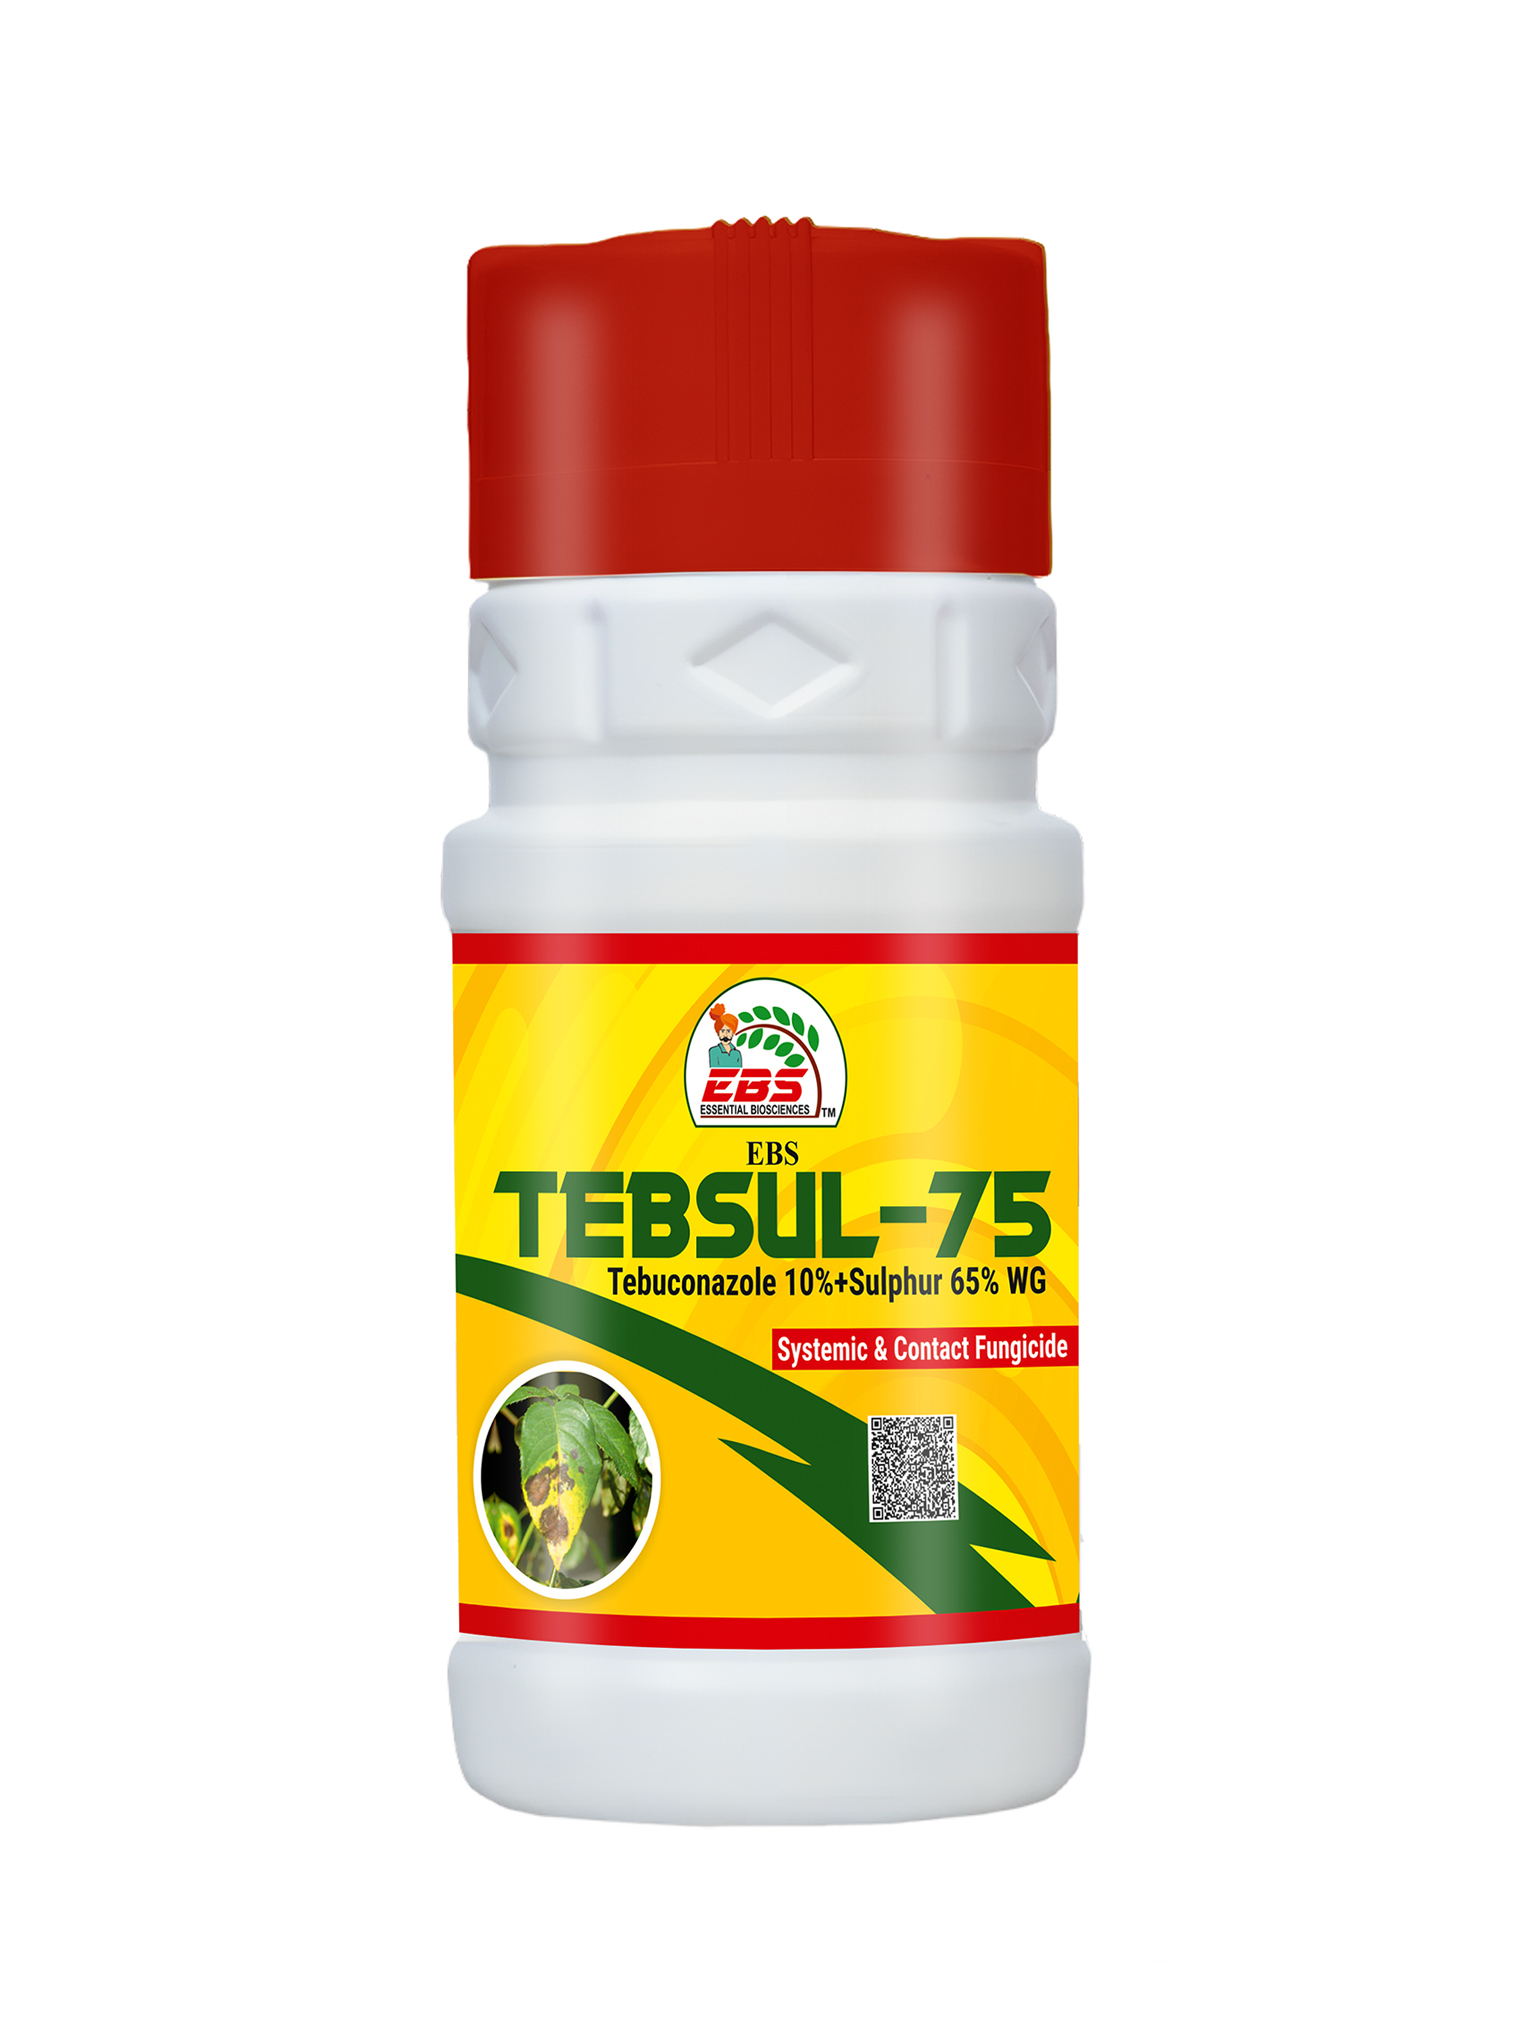 EBS TEBSUL-75TEBUCONAZOLE 10% + SULPHUR 65% WG